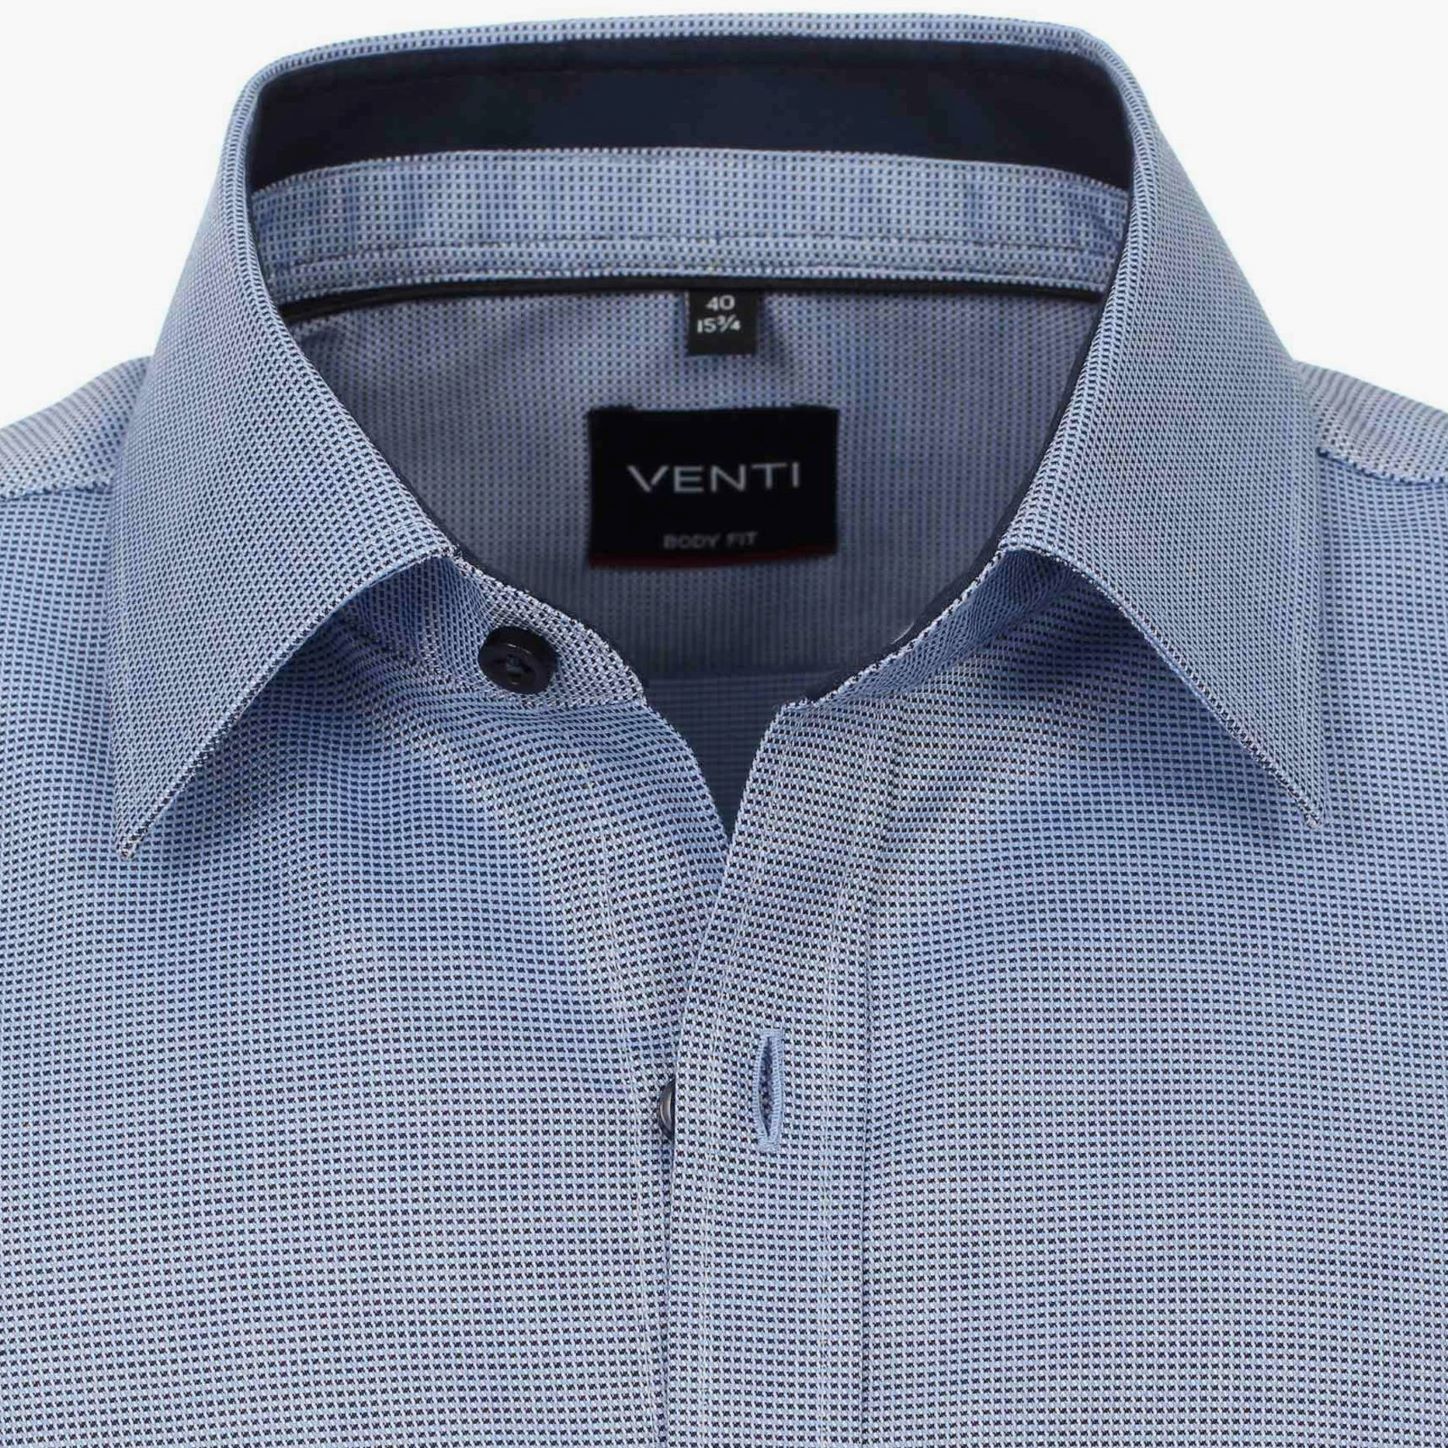 Рубашка Venti Body Fit 103413700-102 из фактурной ткани в синей гамме